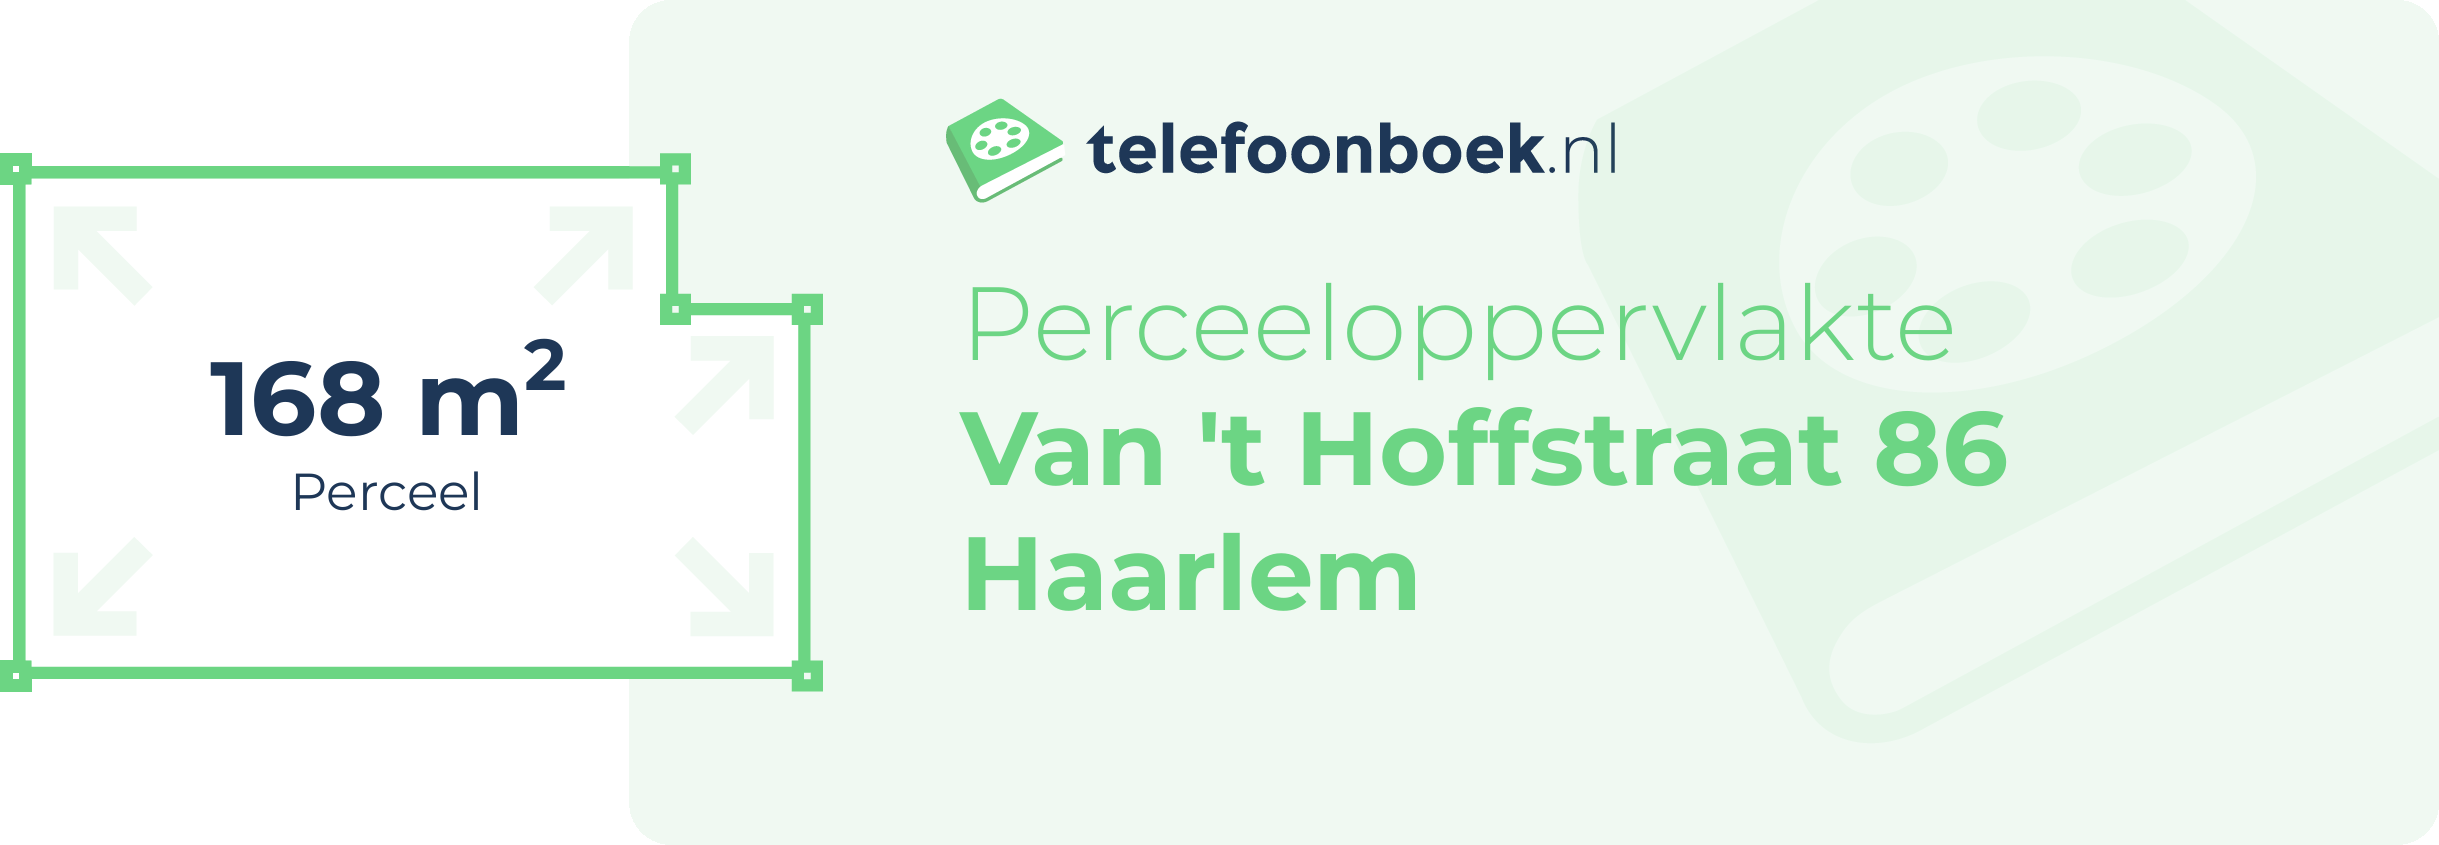 Perceeloppervlakte Van 't Hoffstraat 86 Haarlem